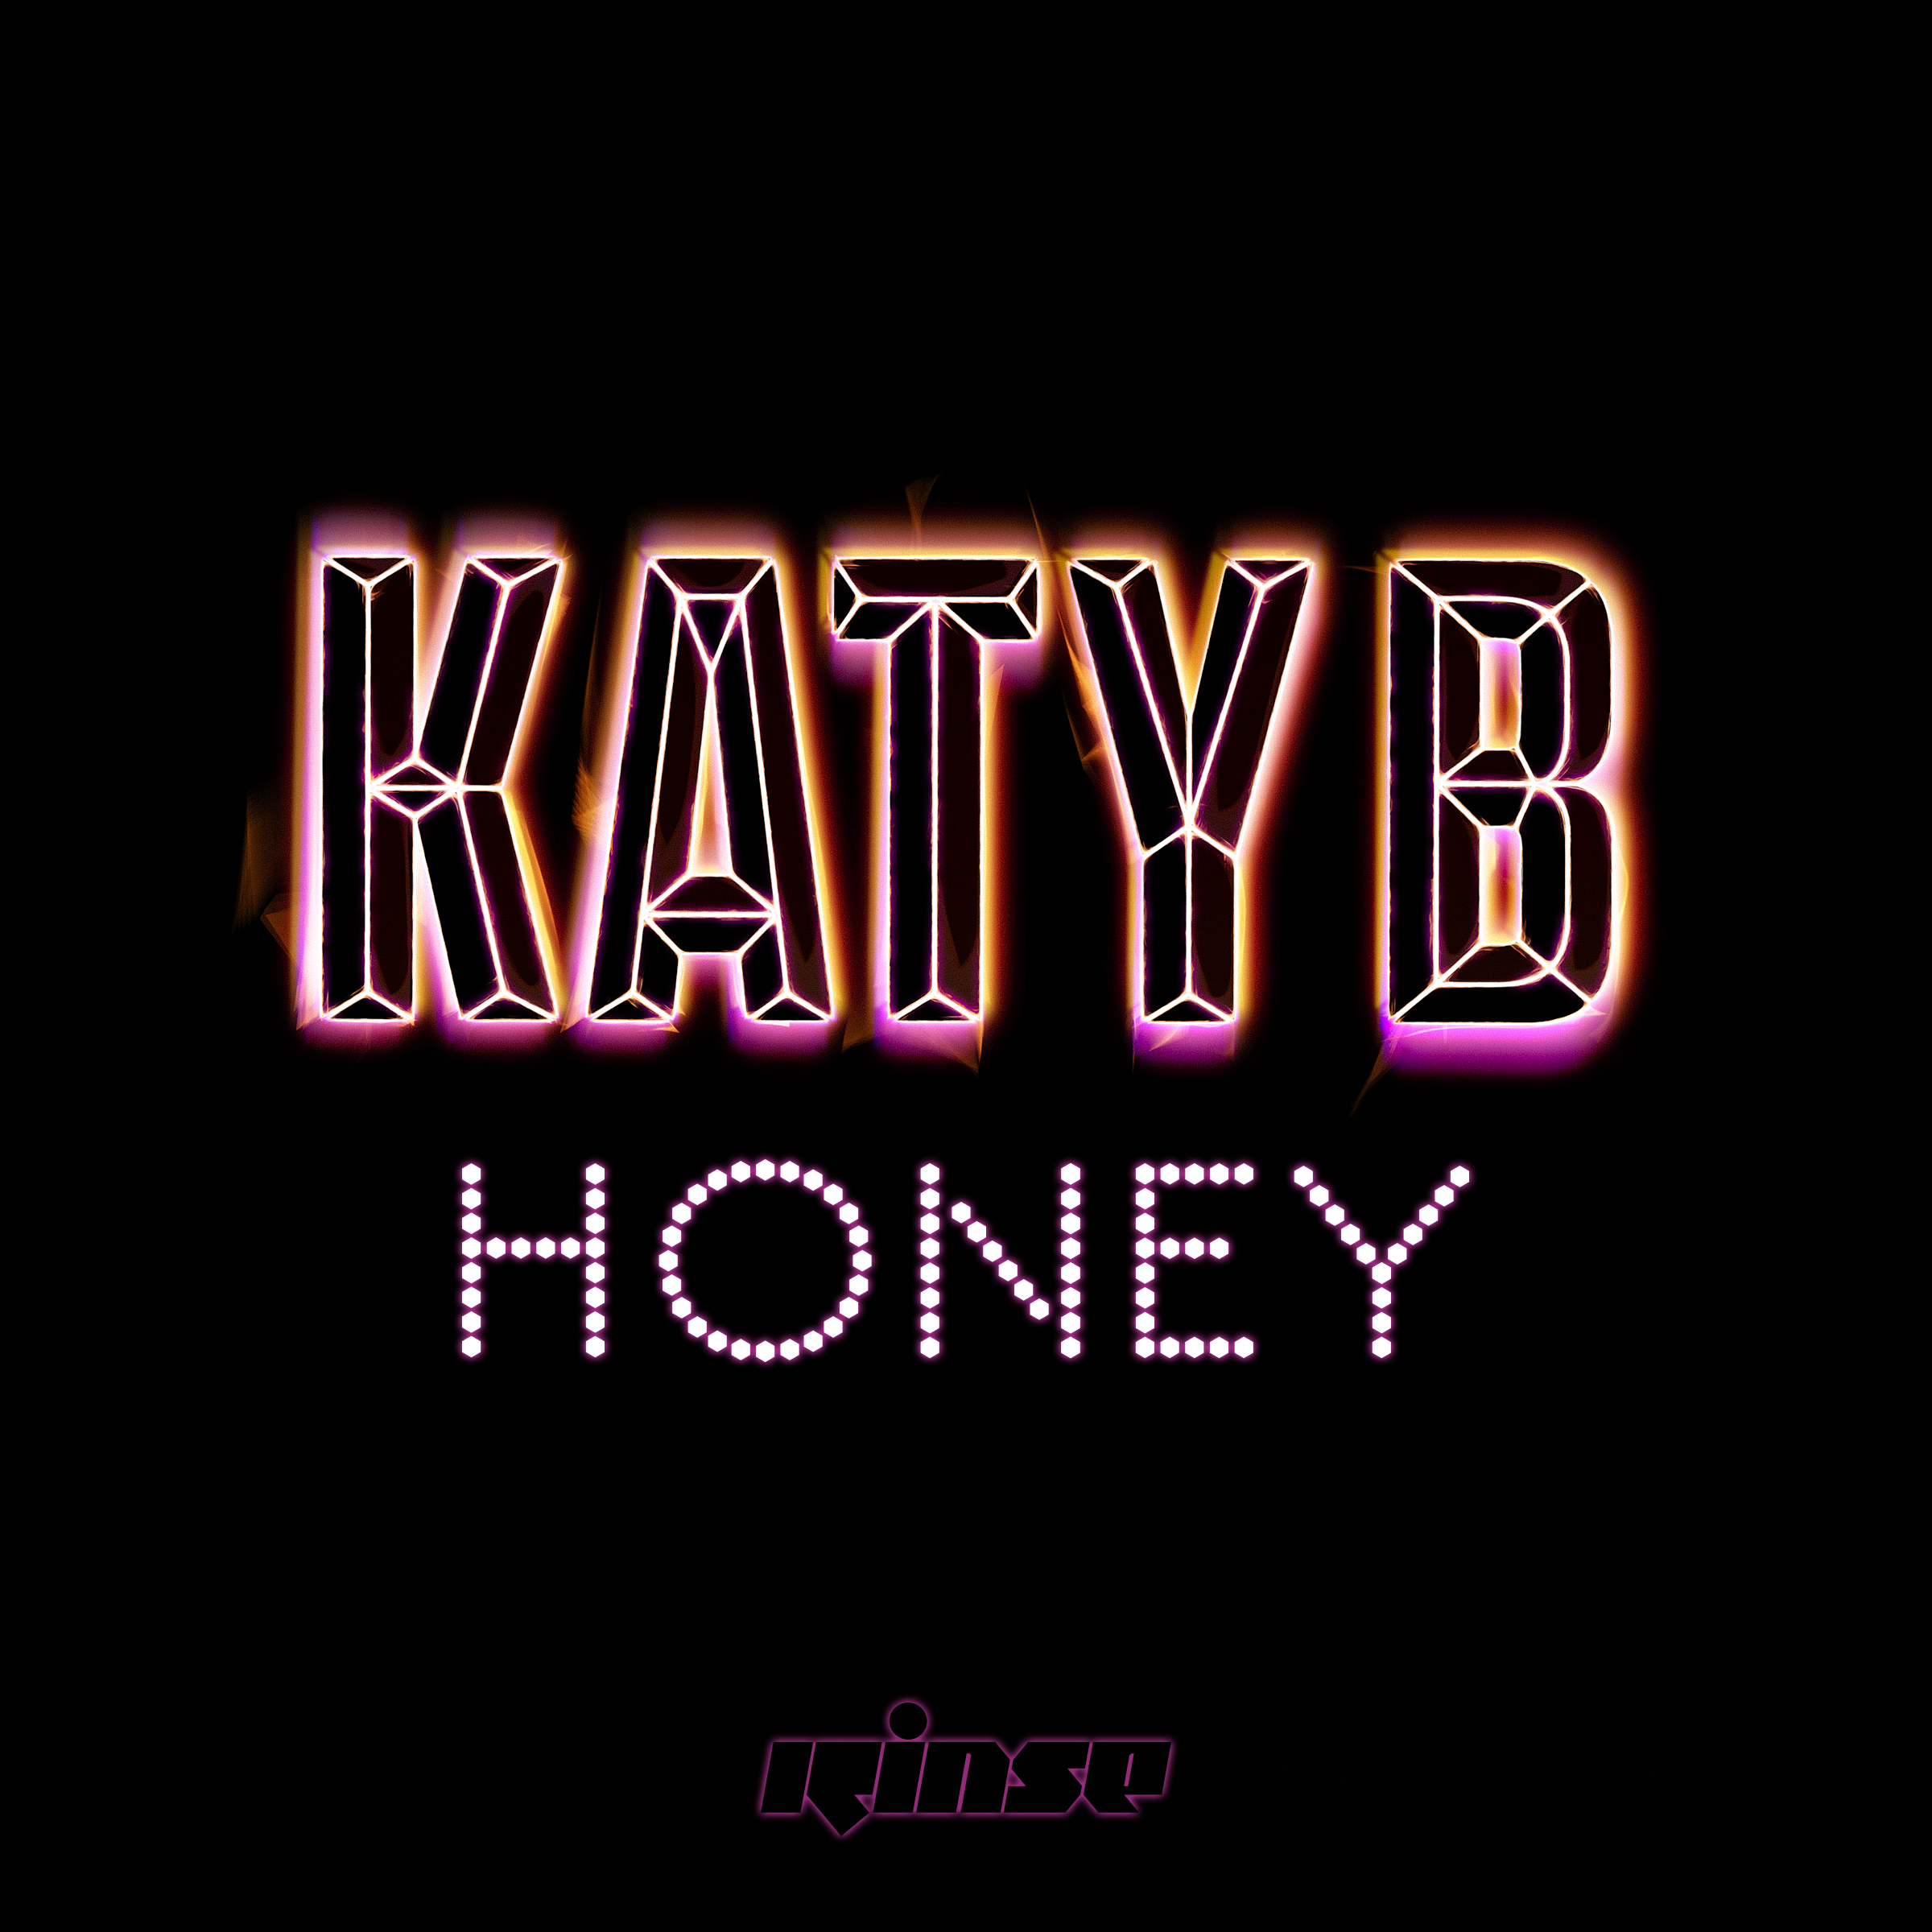 Katy-B-Honey-2016-2400x2400